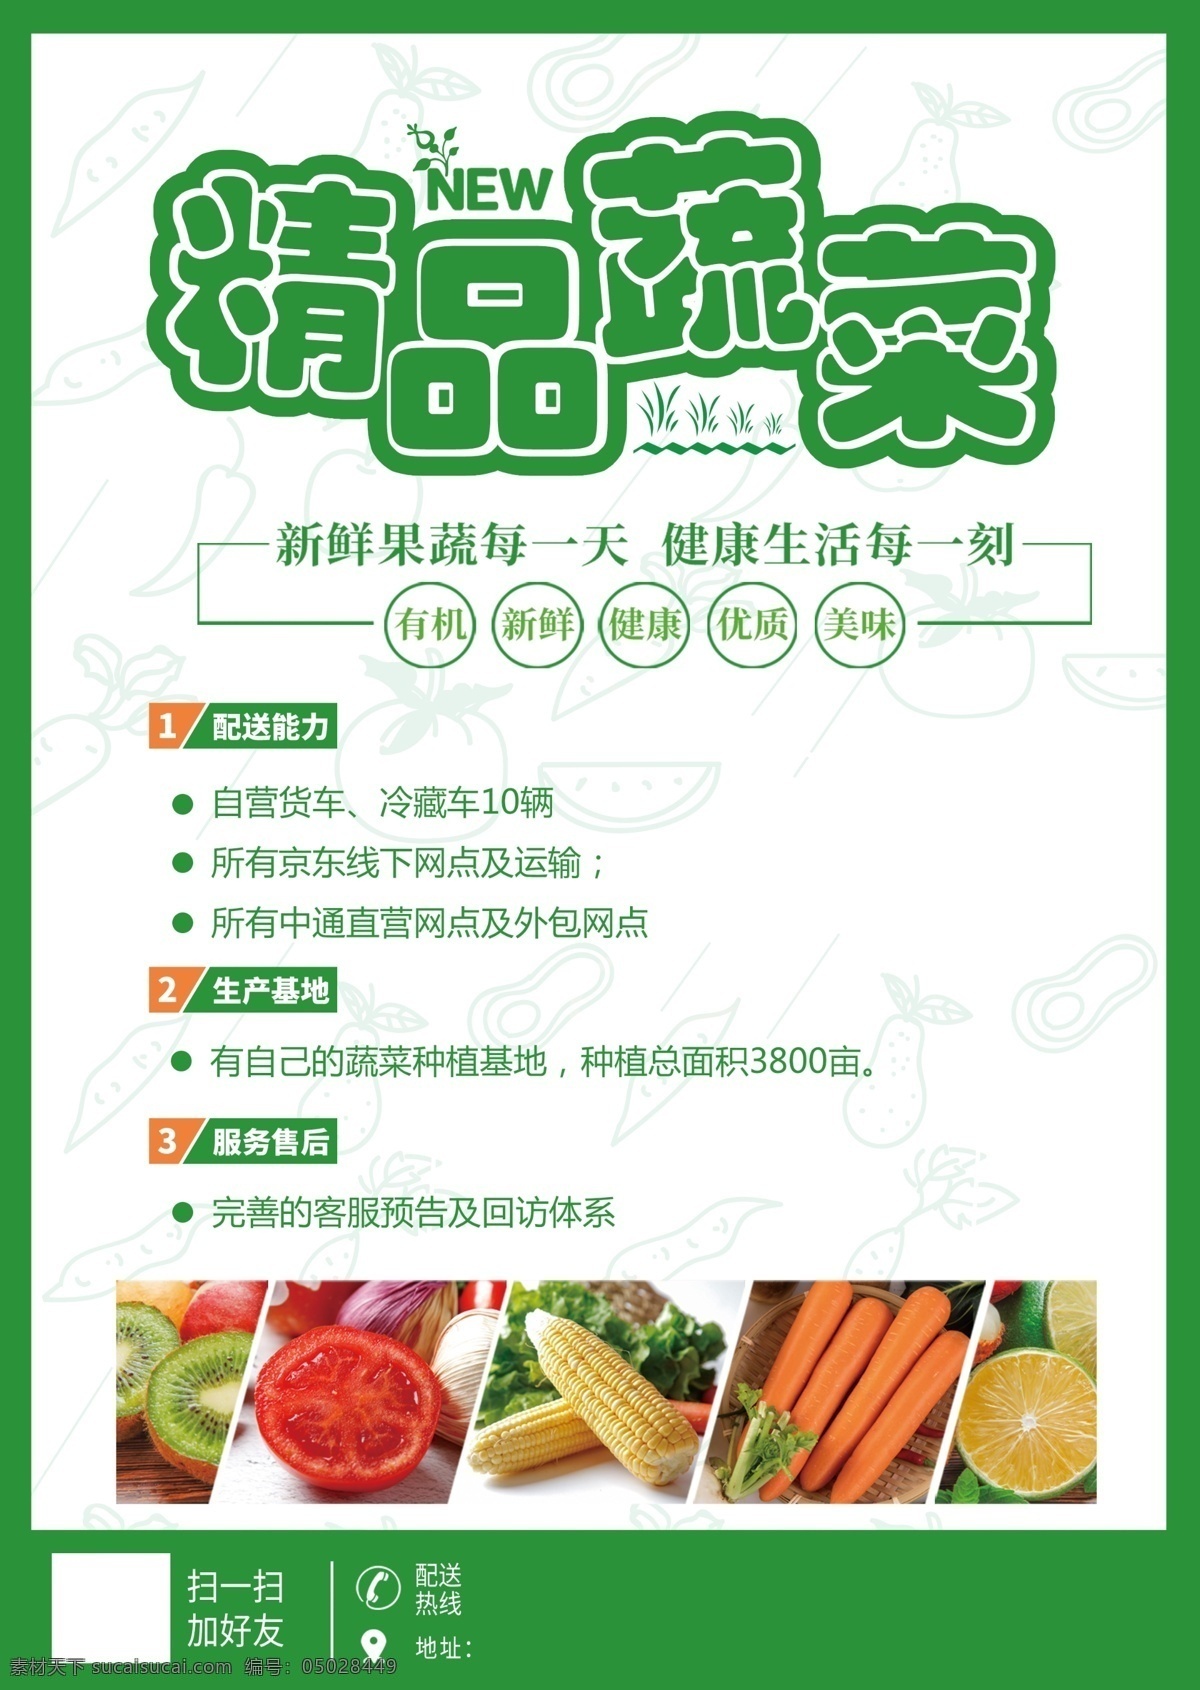 蔬菜配送 蔬菜 水果 外卖 配送 绿色 新鲜 海报 饮食 简约 时尚